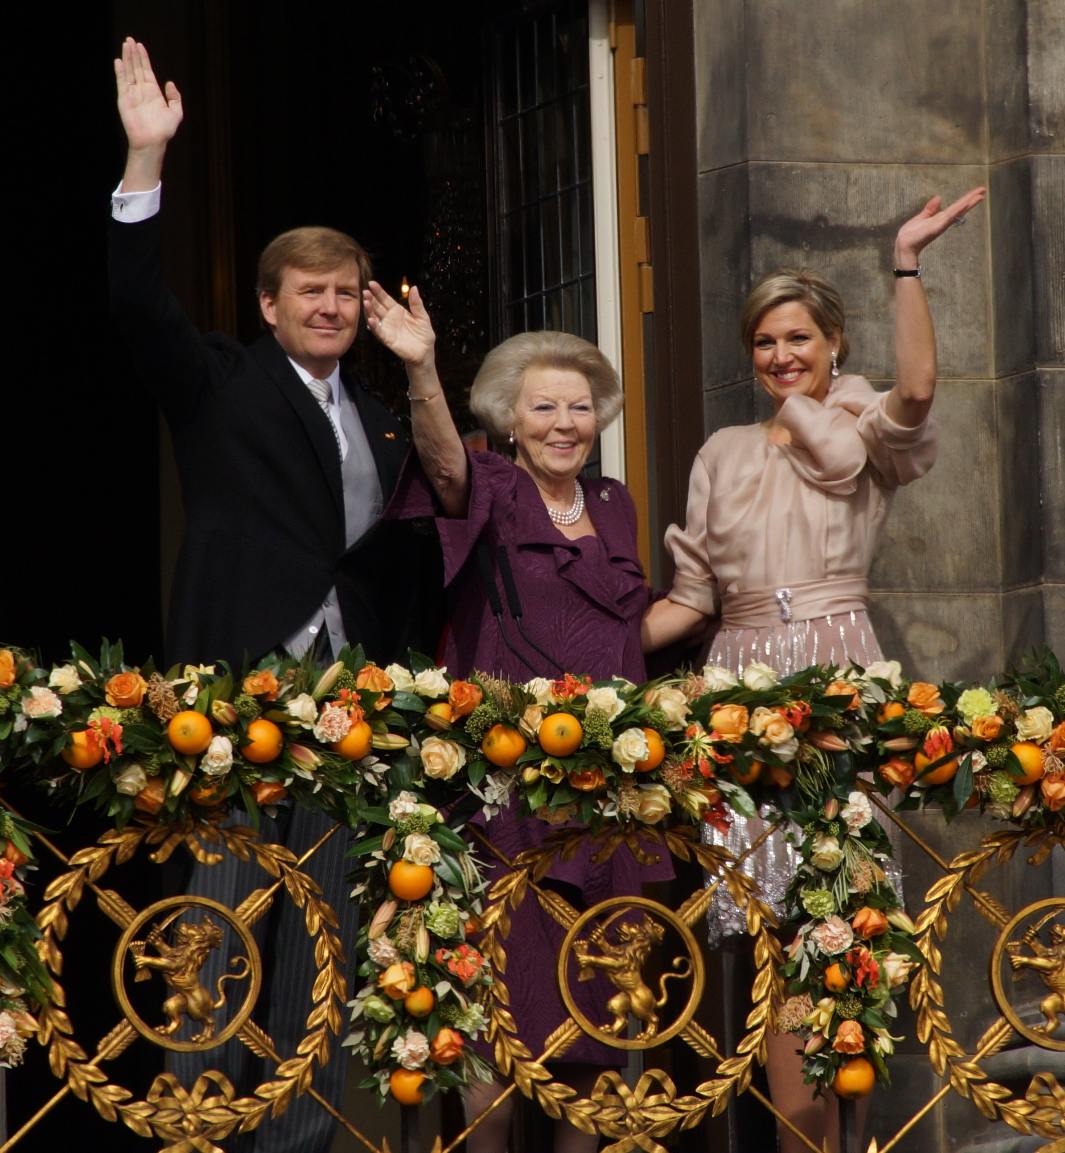 Il y a cinq ans : l’avènement d’une reine « basque » sur le trône des Pays-Bas